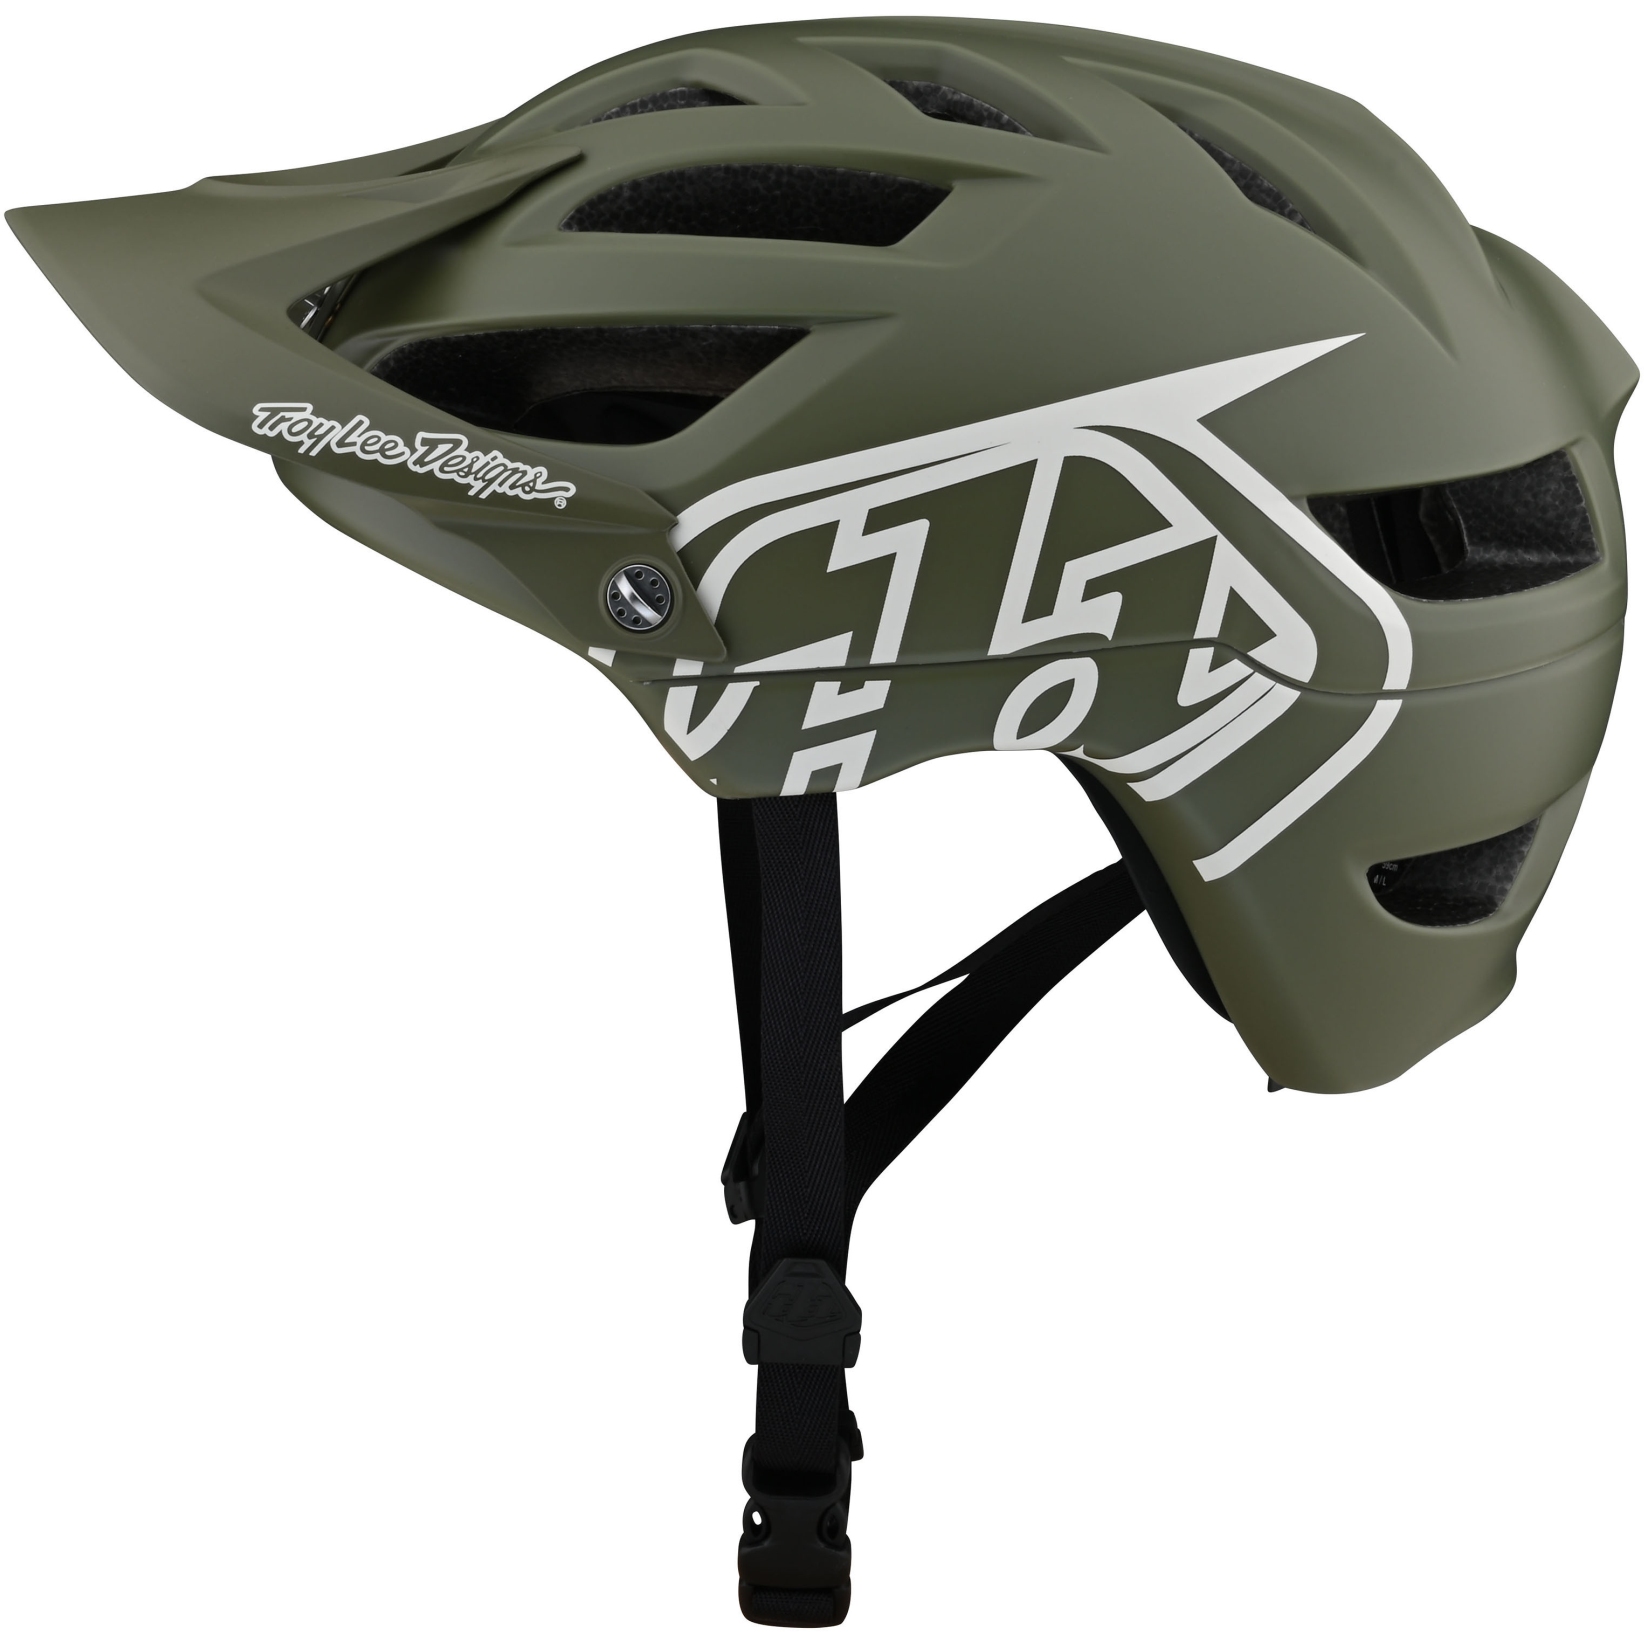 Productfoto van Troy Lee Designs A1 Drone Helmet - steel green